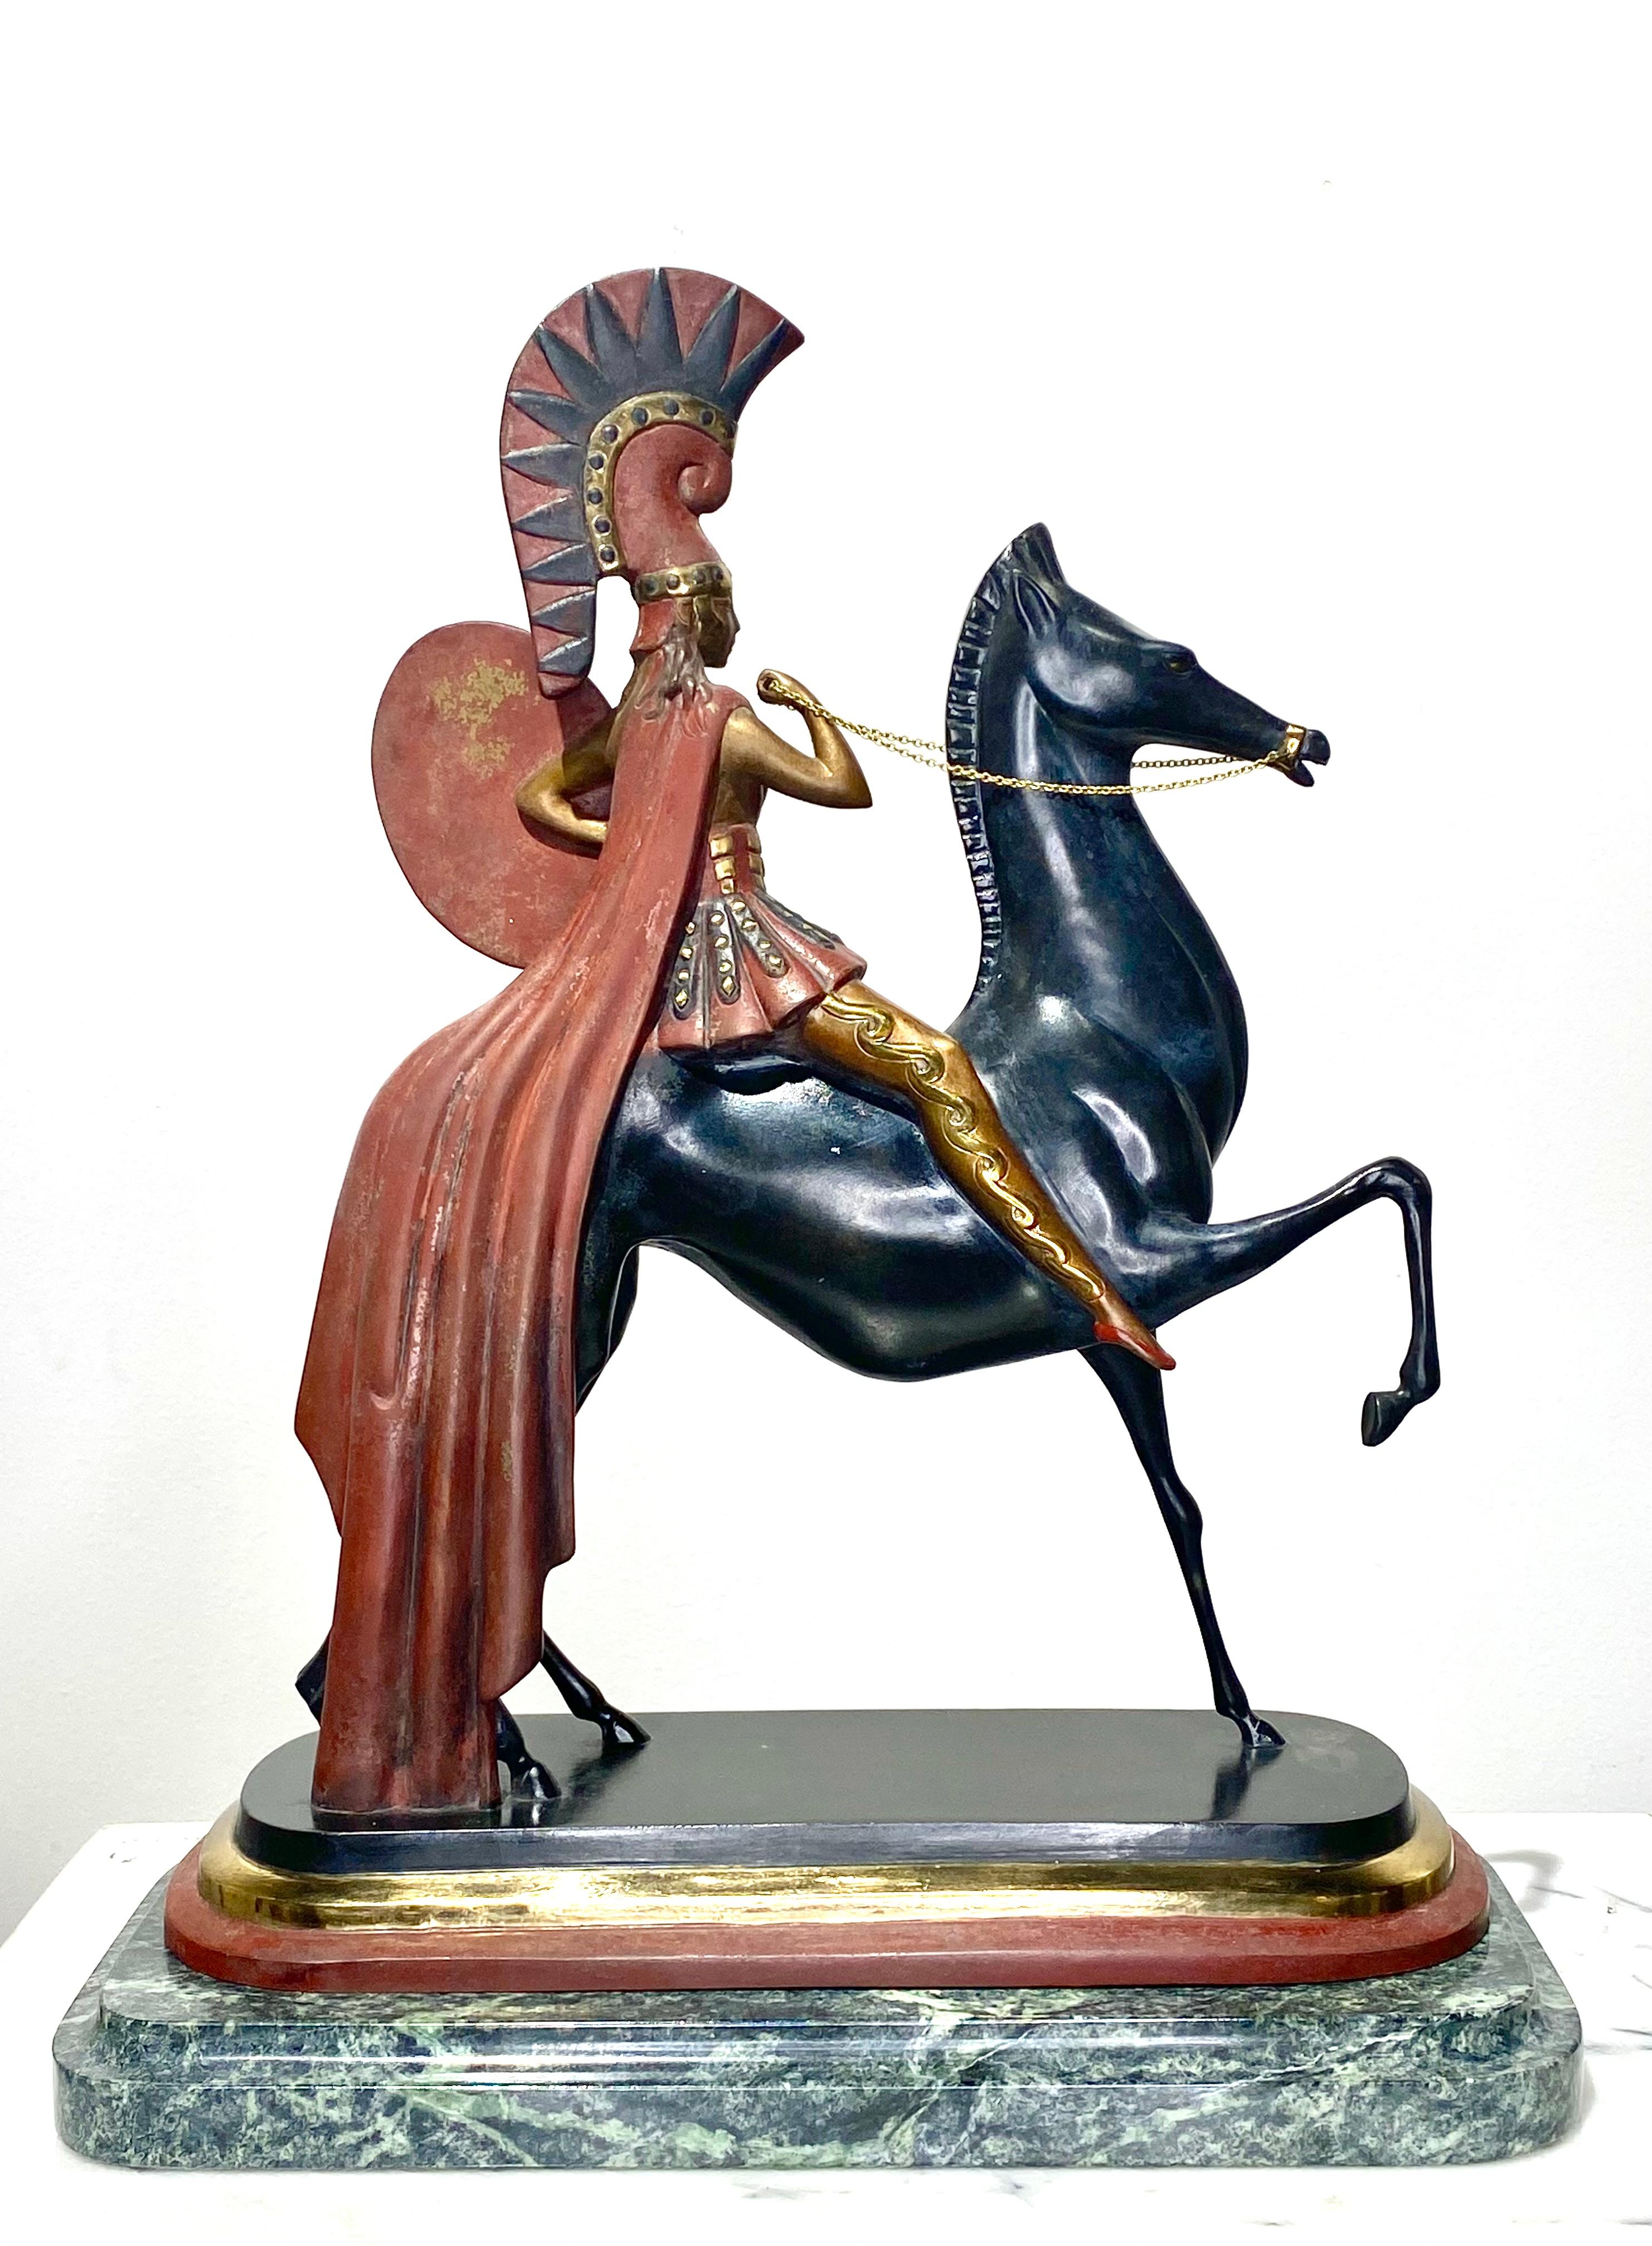 Erte, Russisch (1892 - 1989)
Bronze-Skulptur 